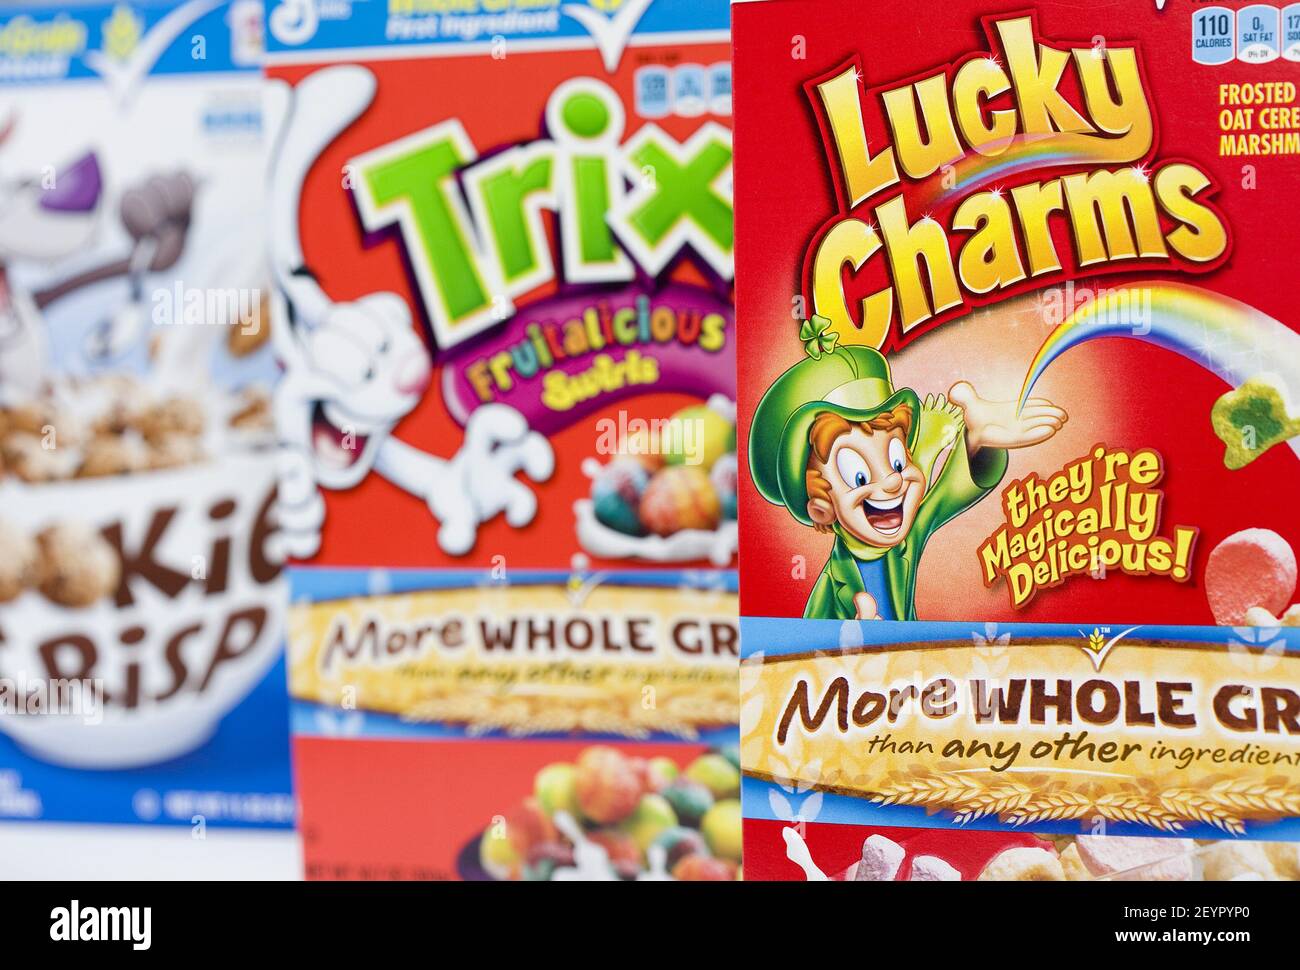 29 de diciembre de 2011 í Cookie Crisp, Trix y Lucky Charms cereales de  desayuno para niños. Estos y otros cereales envasados con azúcar han sido  incendiados por sus altas calorías y